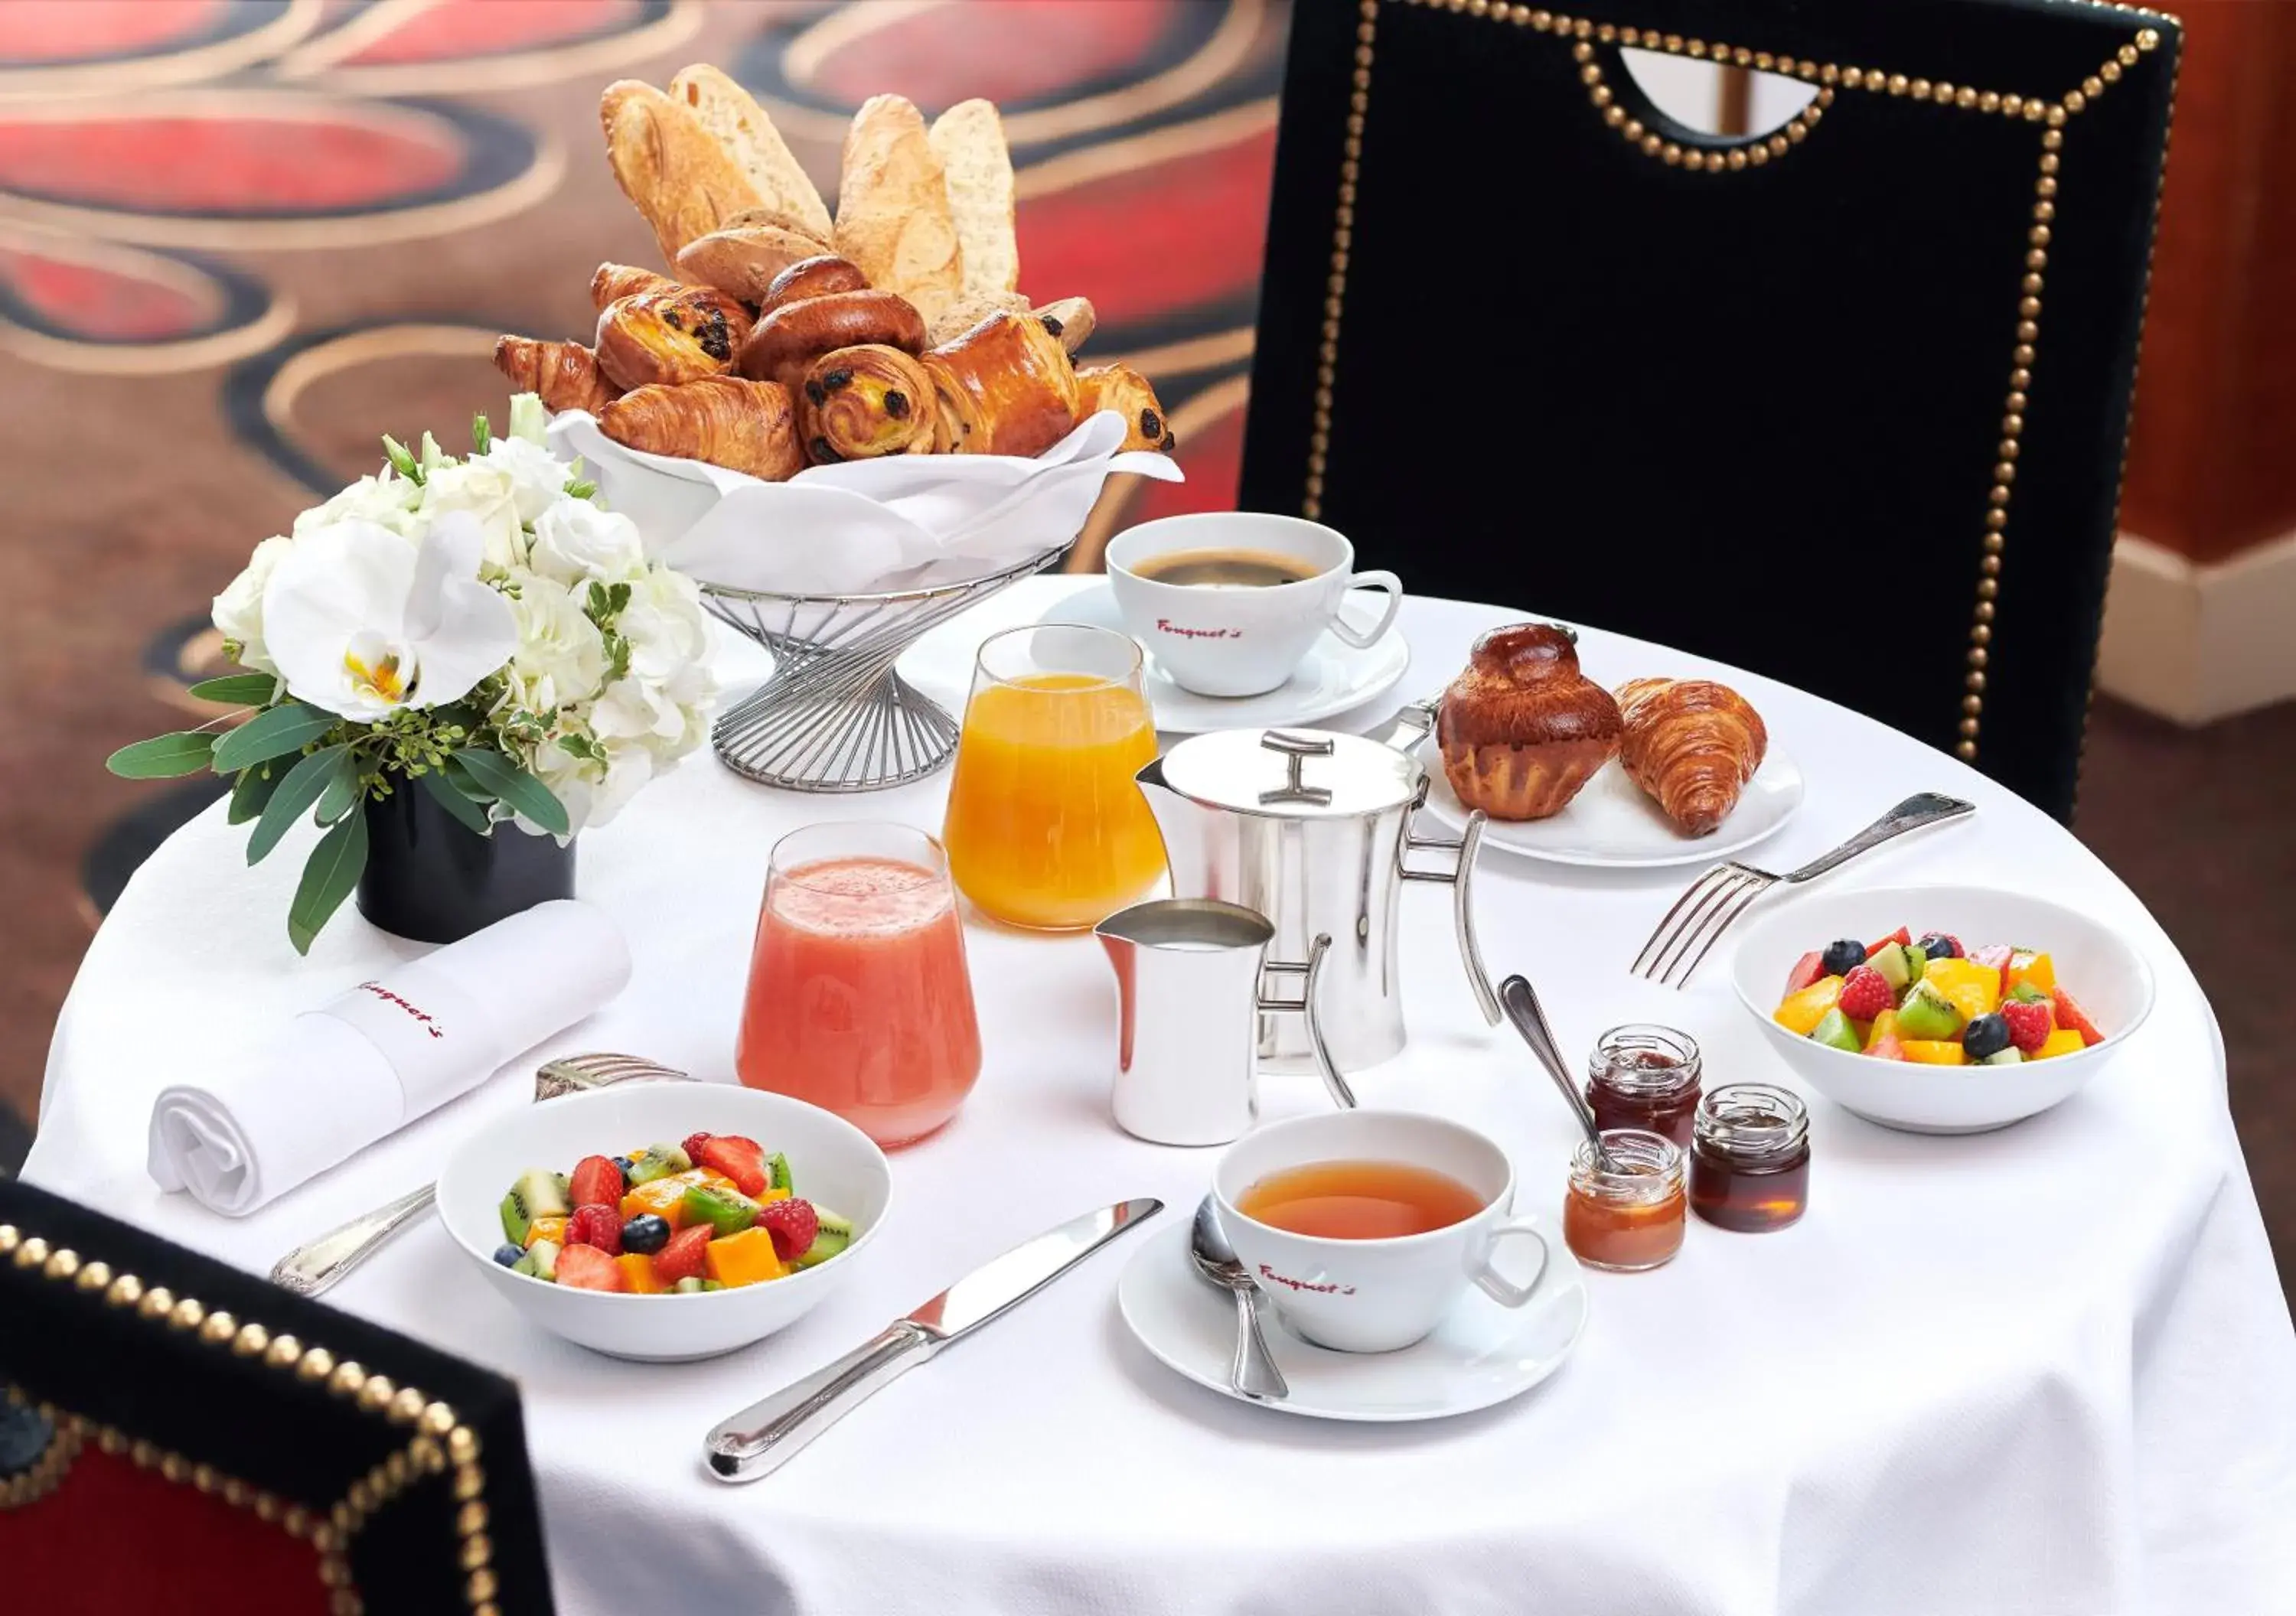 Breakfast in Hotel Barriere Le Fouquet's